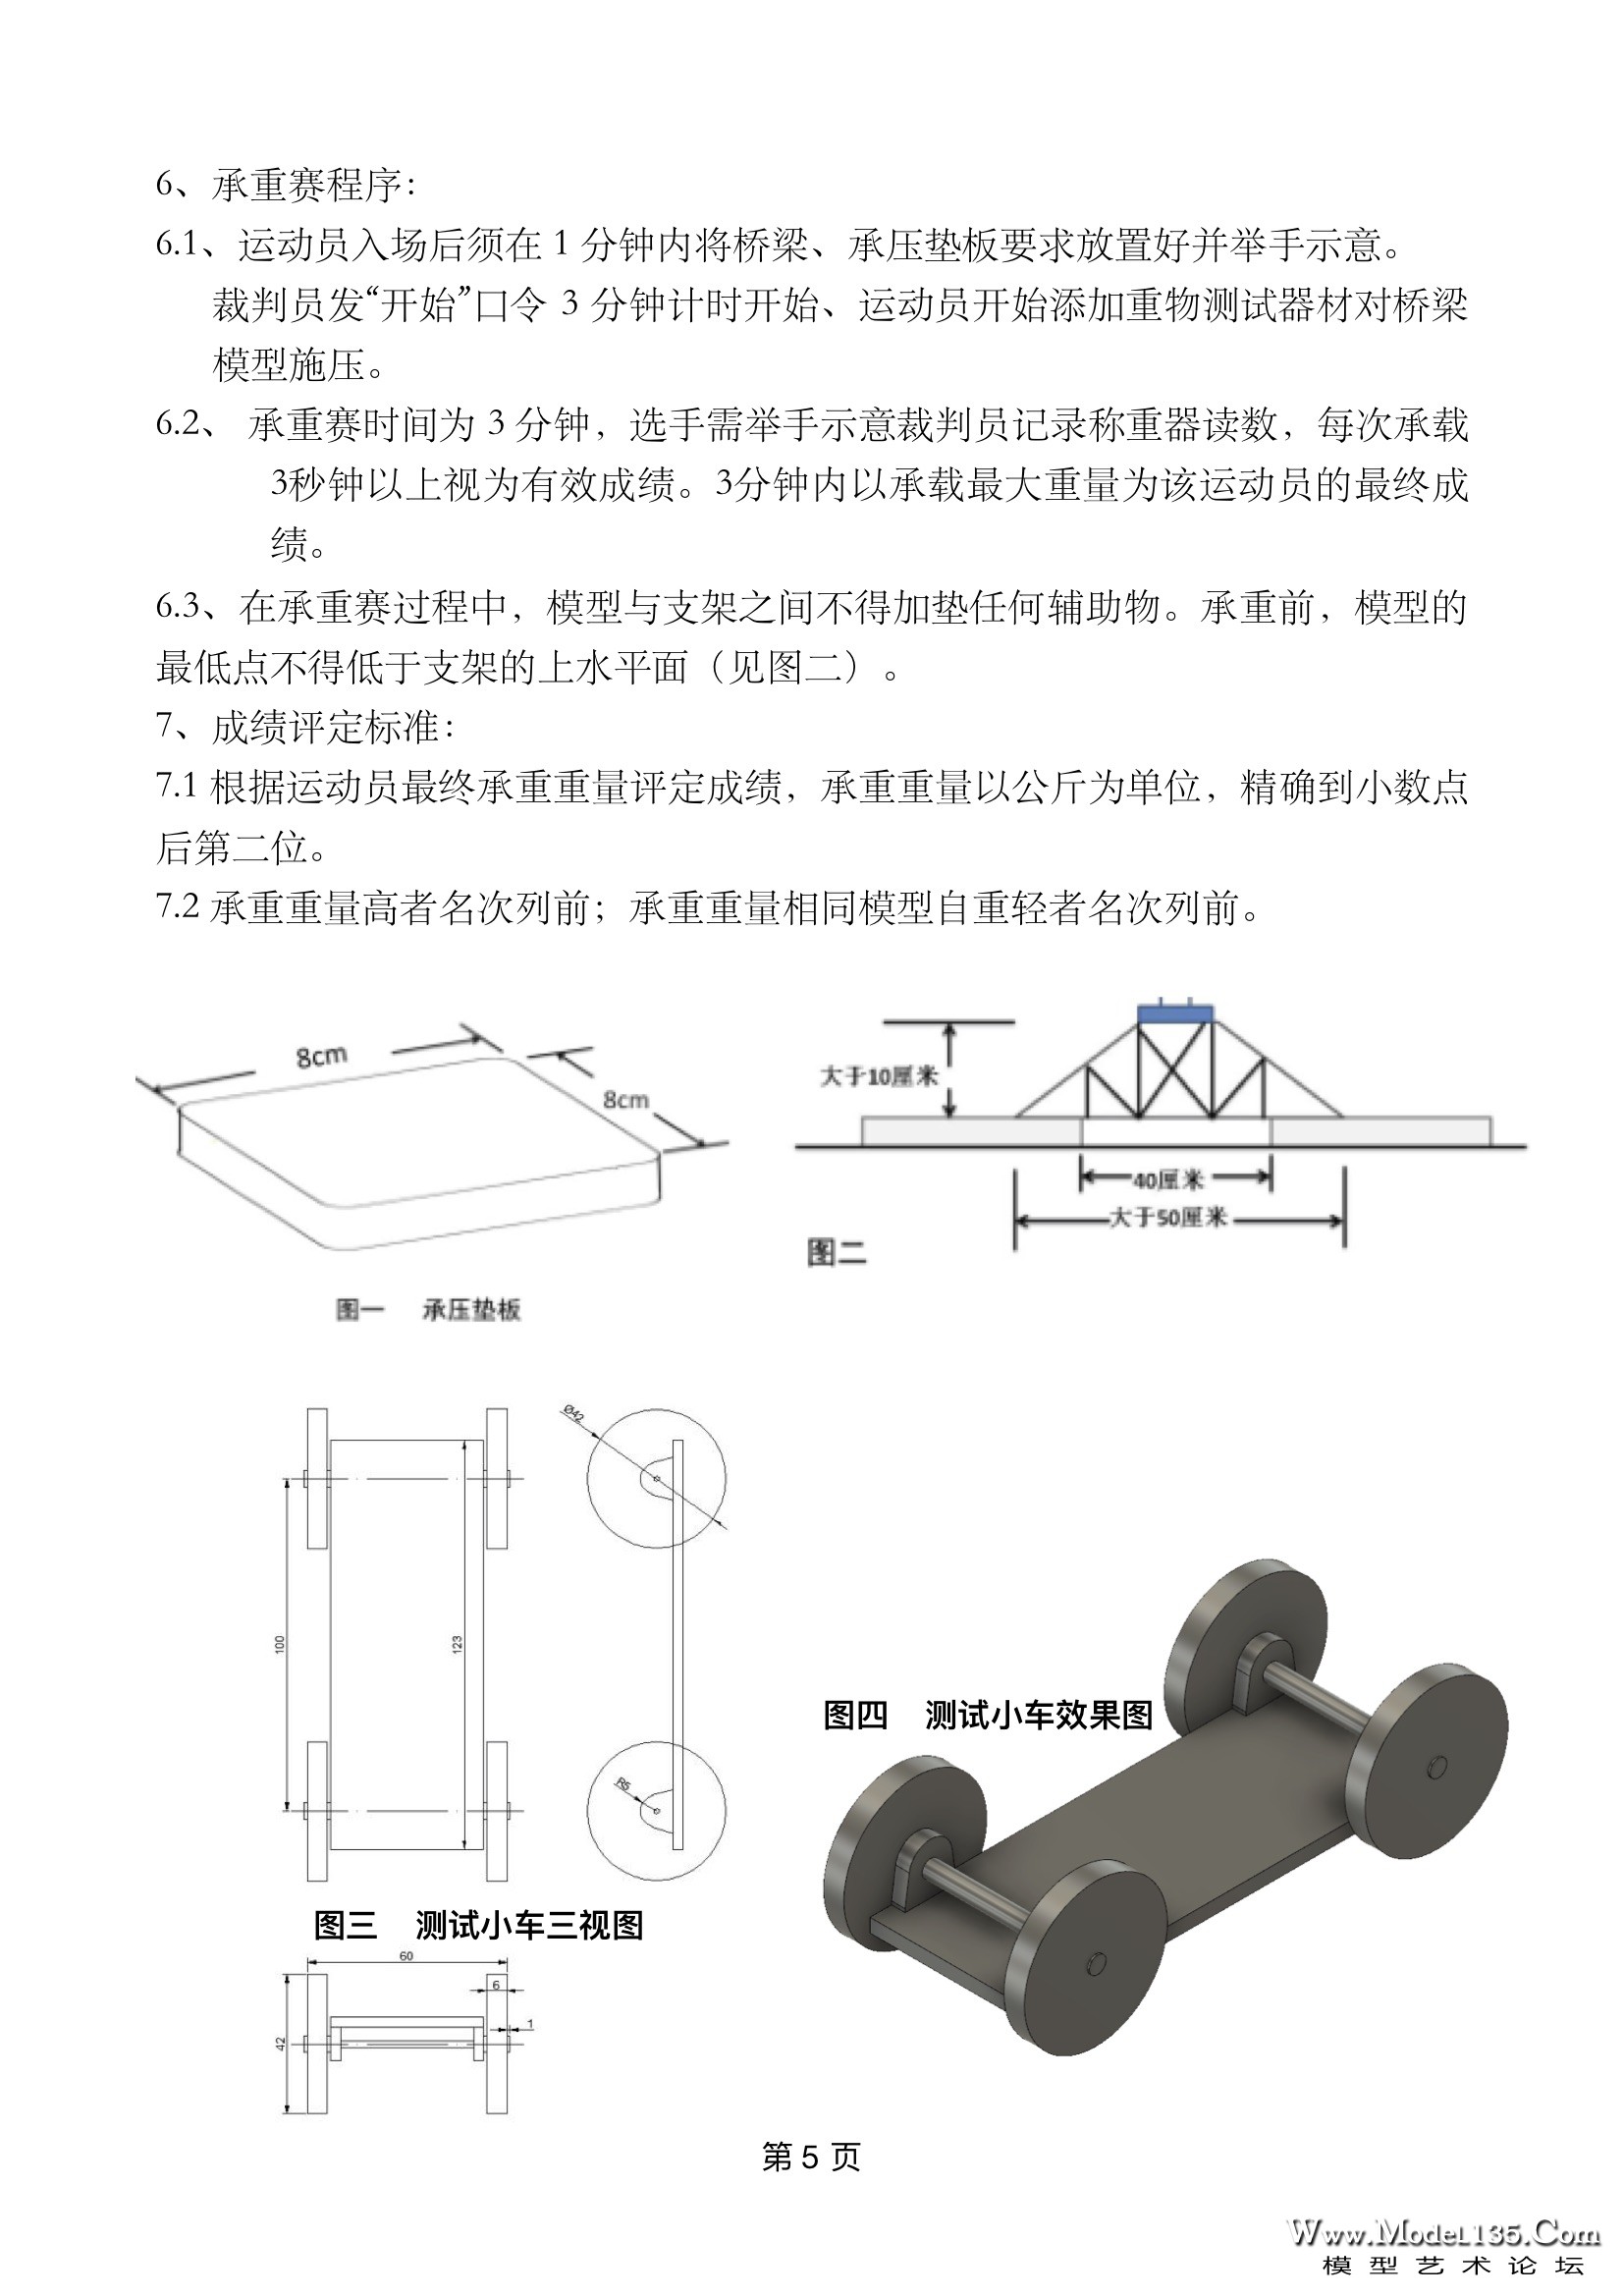 5-2019年福建省建筑模型锦标赛规则.jpg